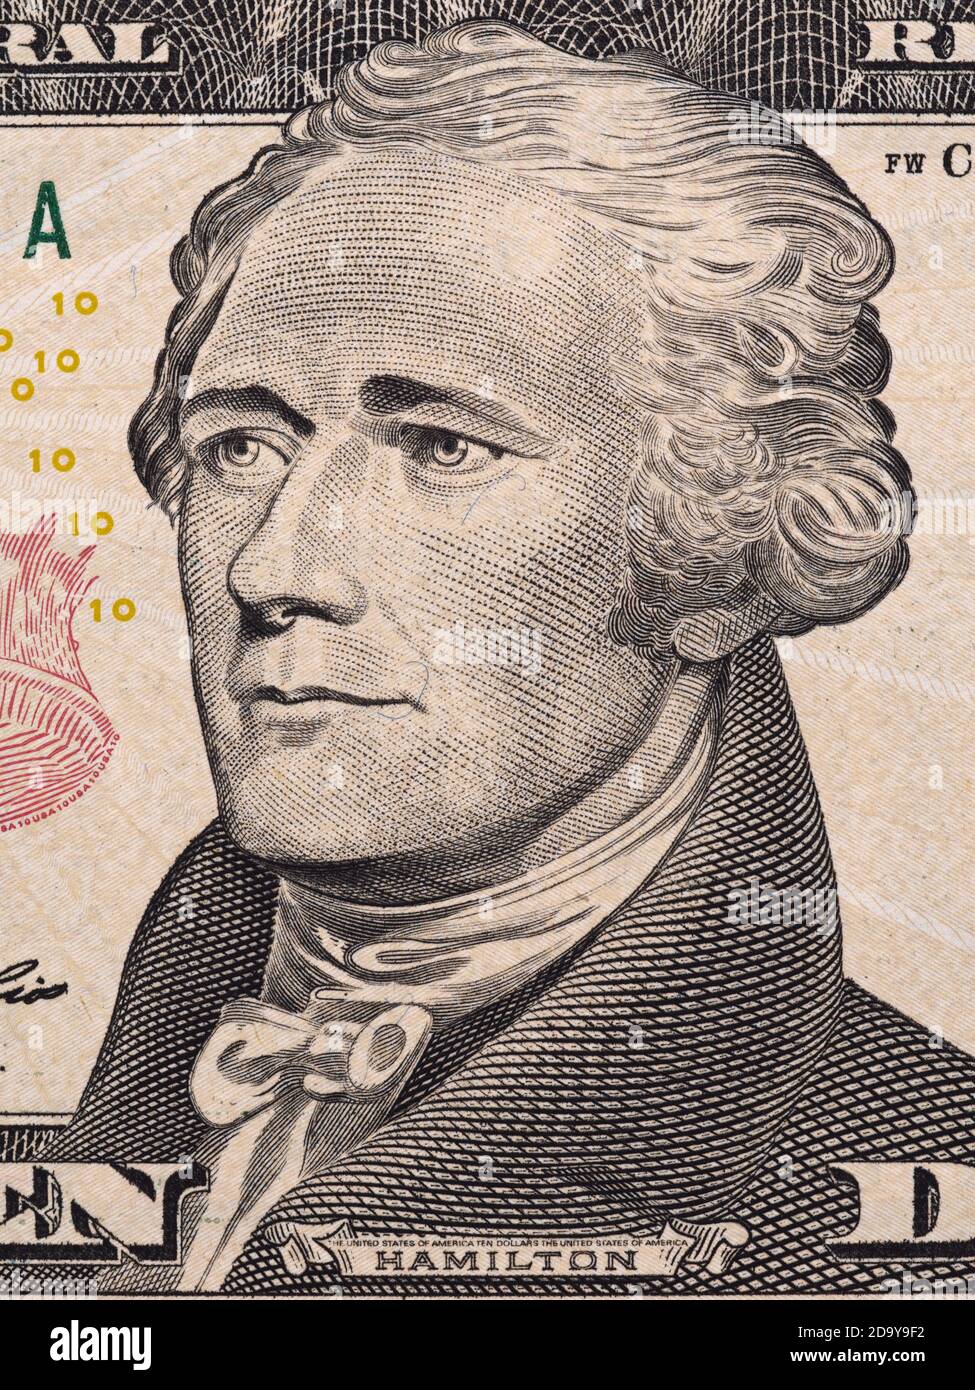 Alexander Hamilton Porträt auf zehn-Dollar-Geldschein Makro, 10 usd, usa Geld Nahaufnahme Stockfoto